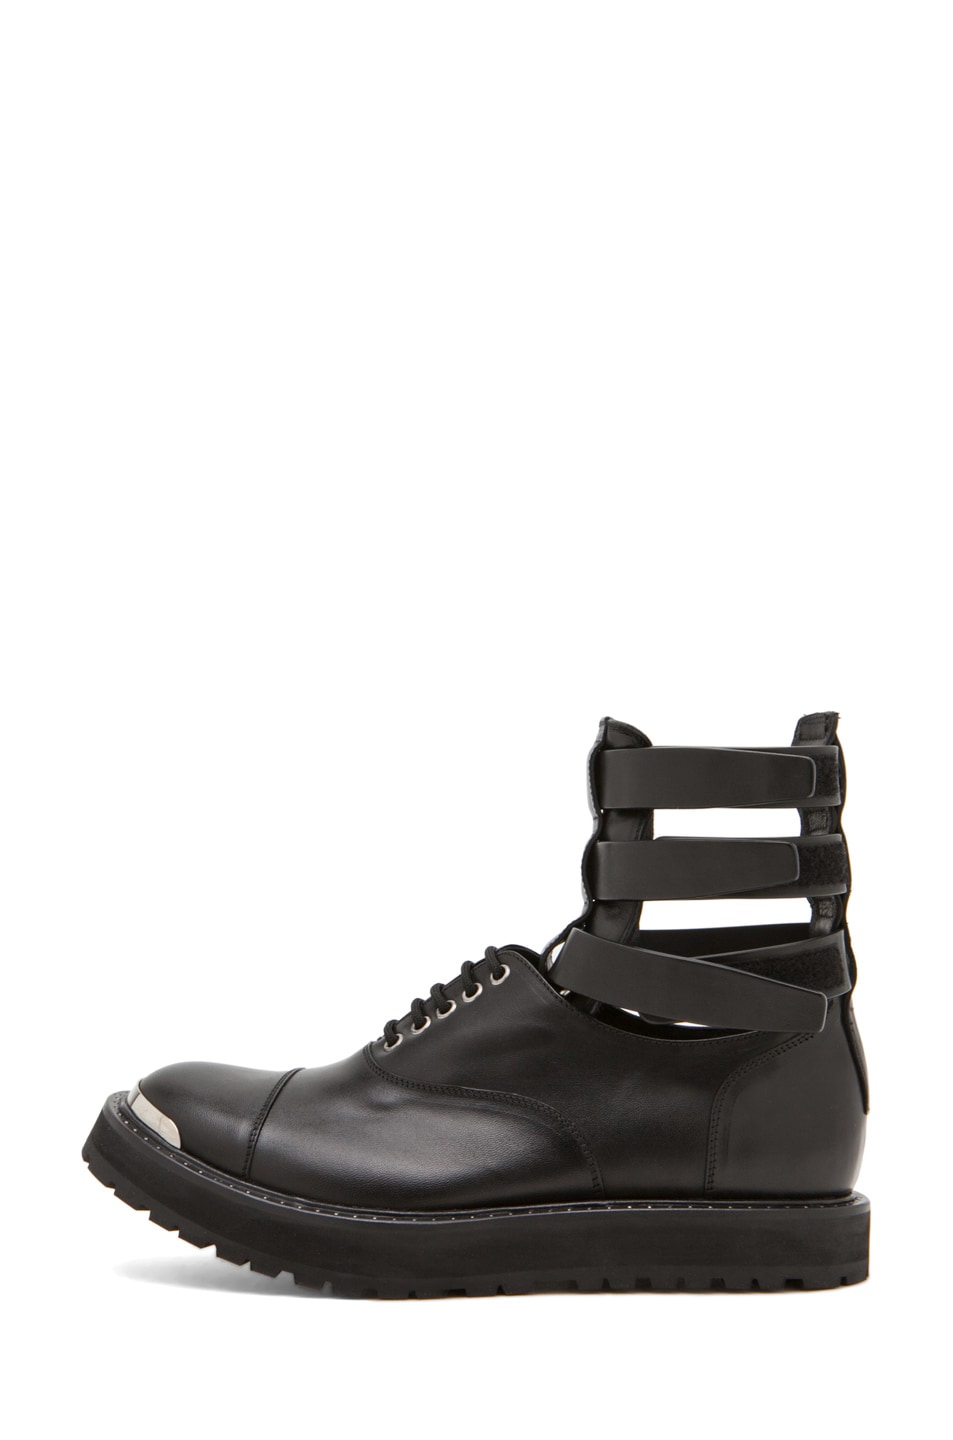 Image 1 of Neil Barrett Roman Boot Wedge Shoe in Black